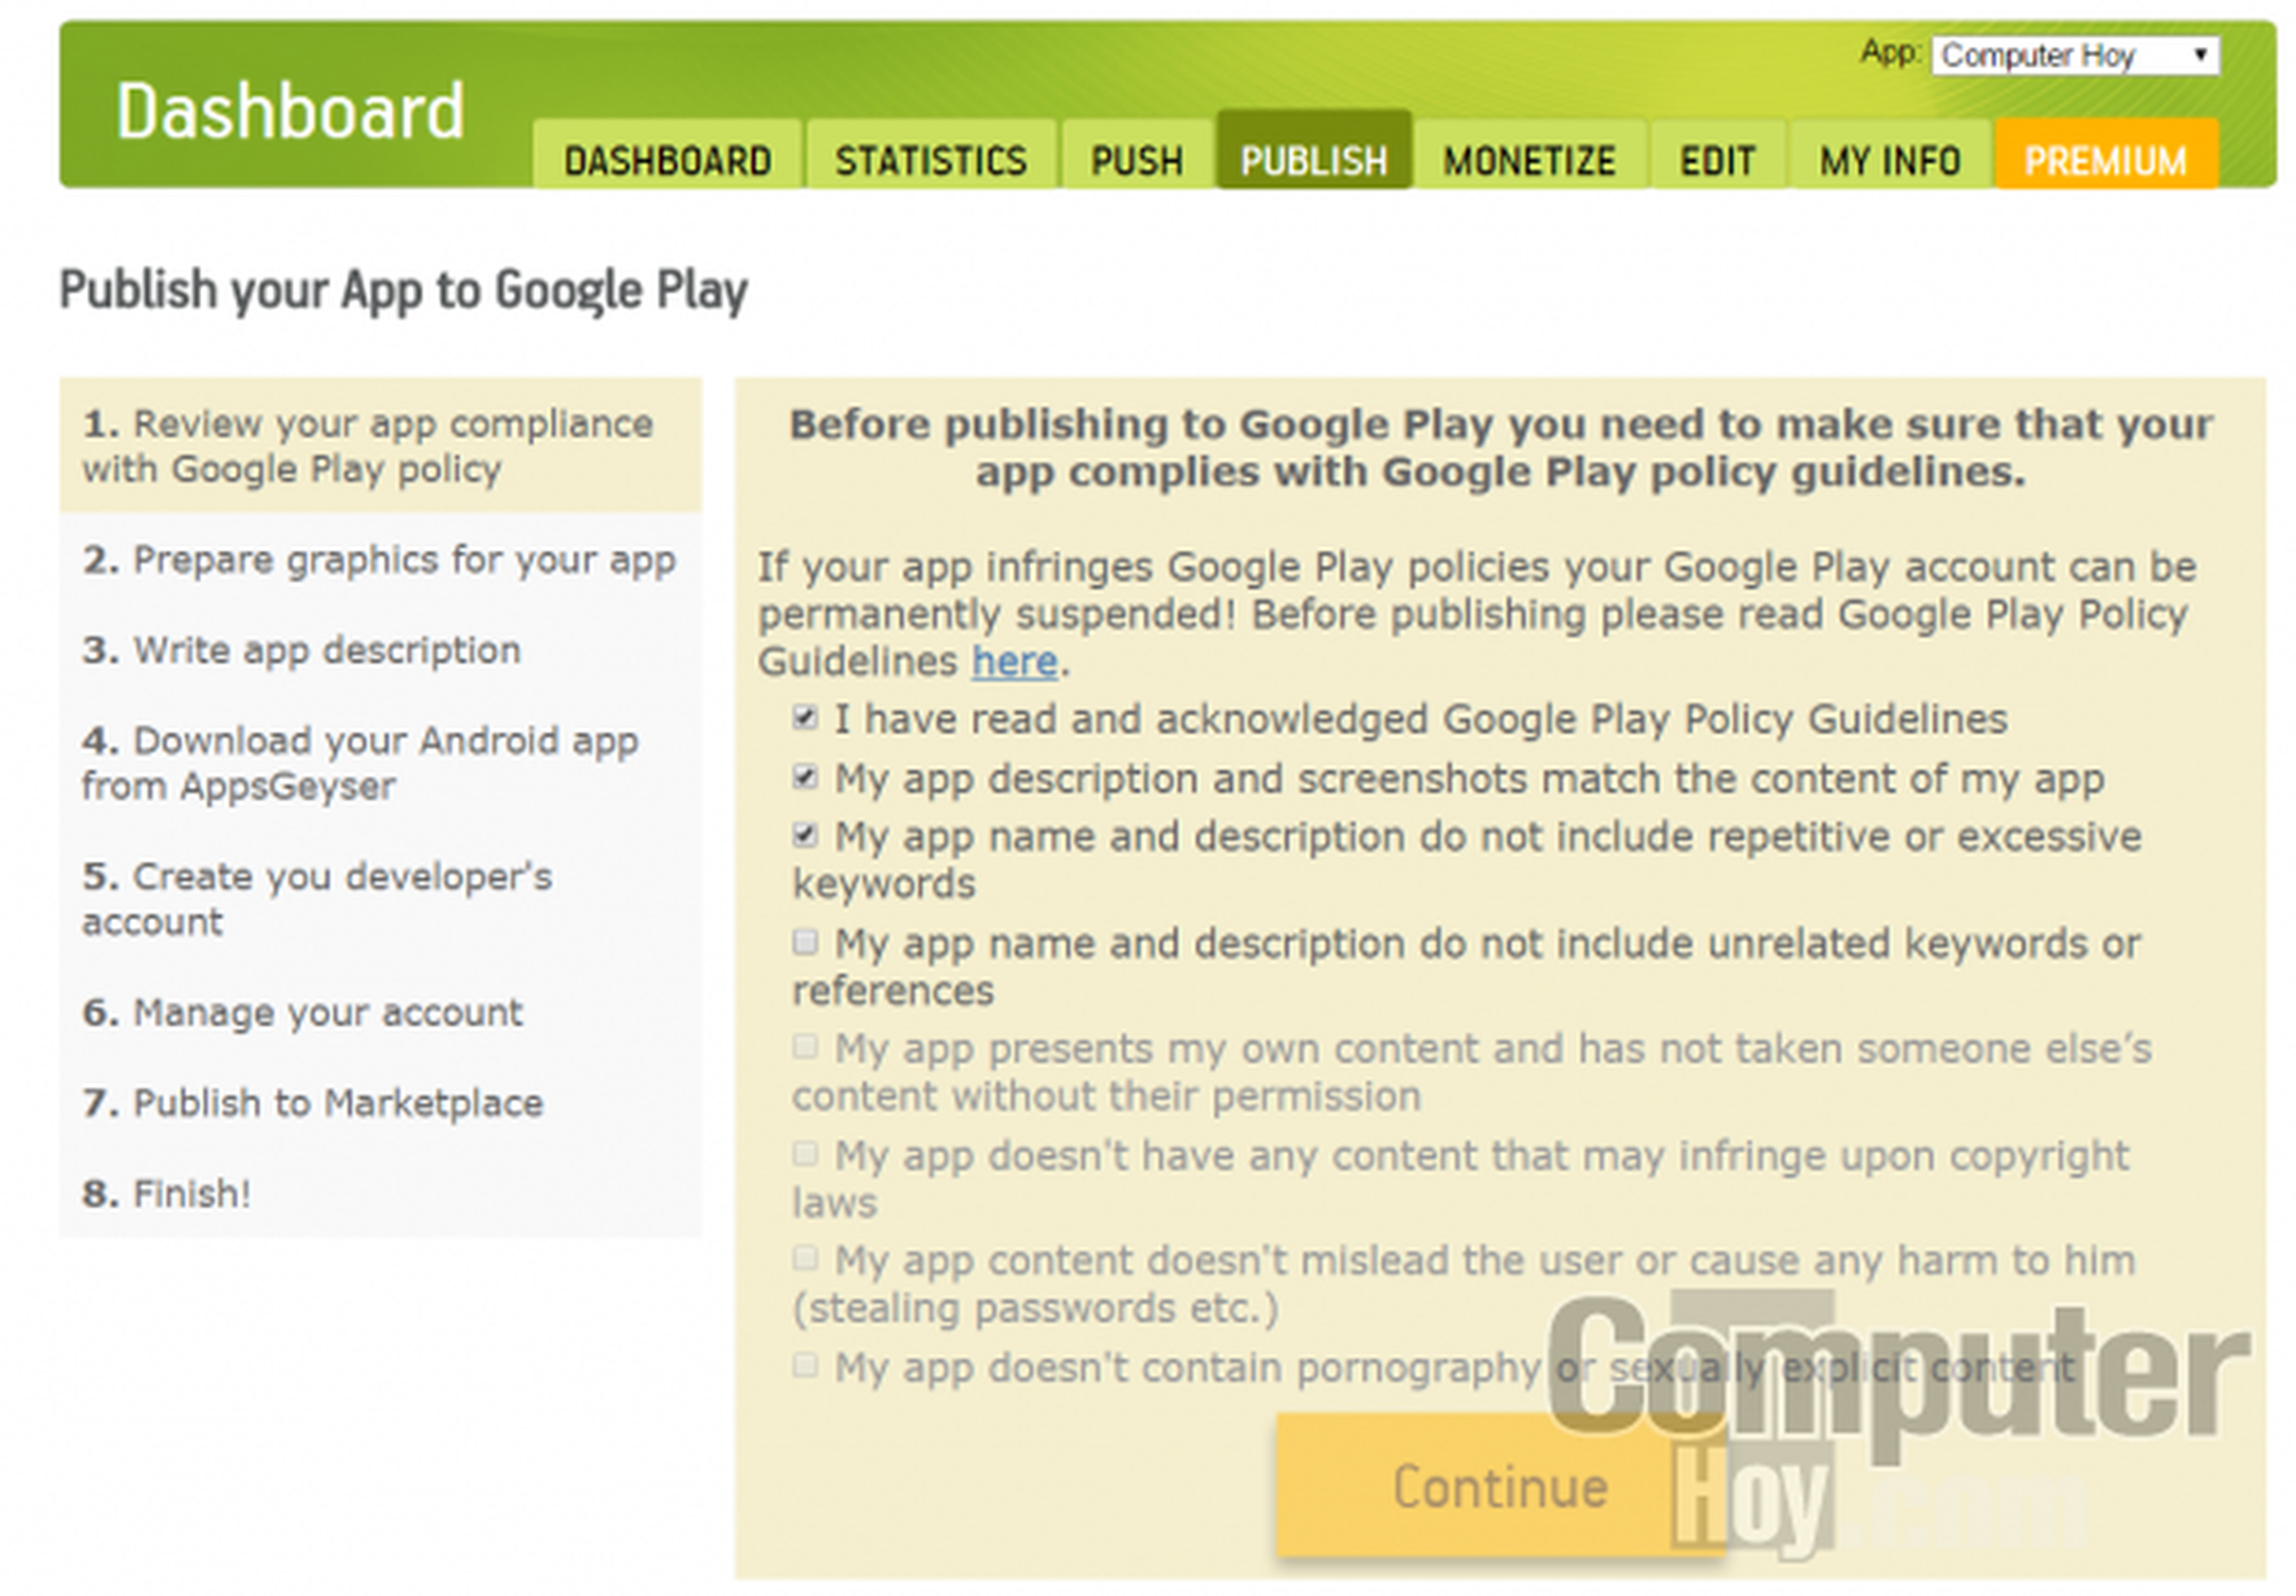 Para publicar tu app en Google Play o cualquier otro Market para Android, tan sólo necesitarás seguir los pasos marcados por el asistente de AppsGeyser.